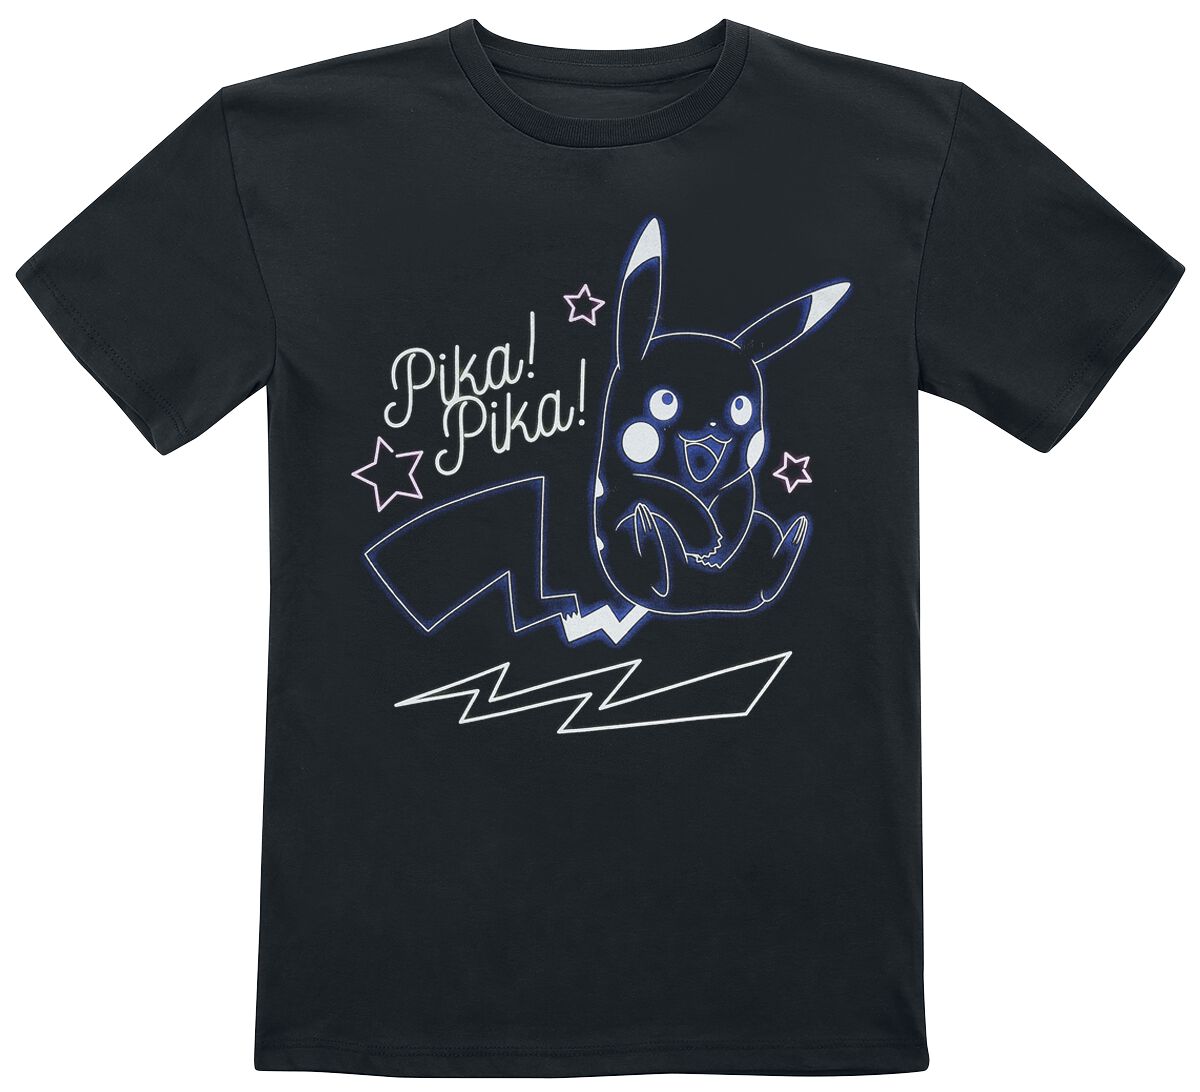 Pokémon - Gaming T-Shirt für Kinder - Kids - Pikachu - Pika! Pika! Neon - für Mädchen & Jungen - schwarz  - EMP exklusives Merchandise! von Pokémon